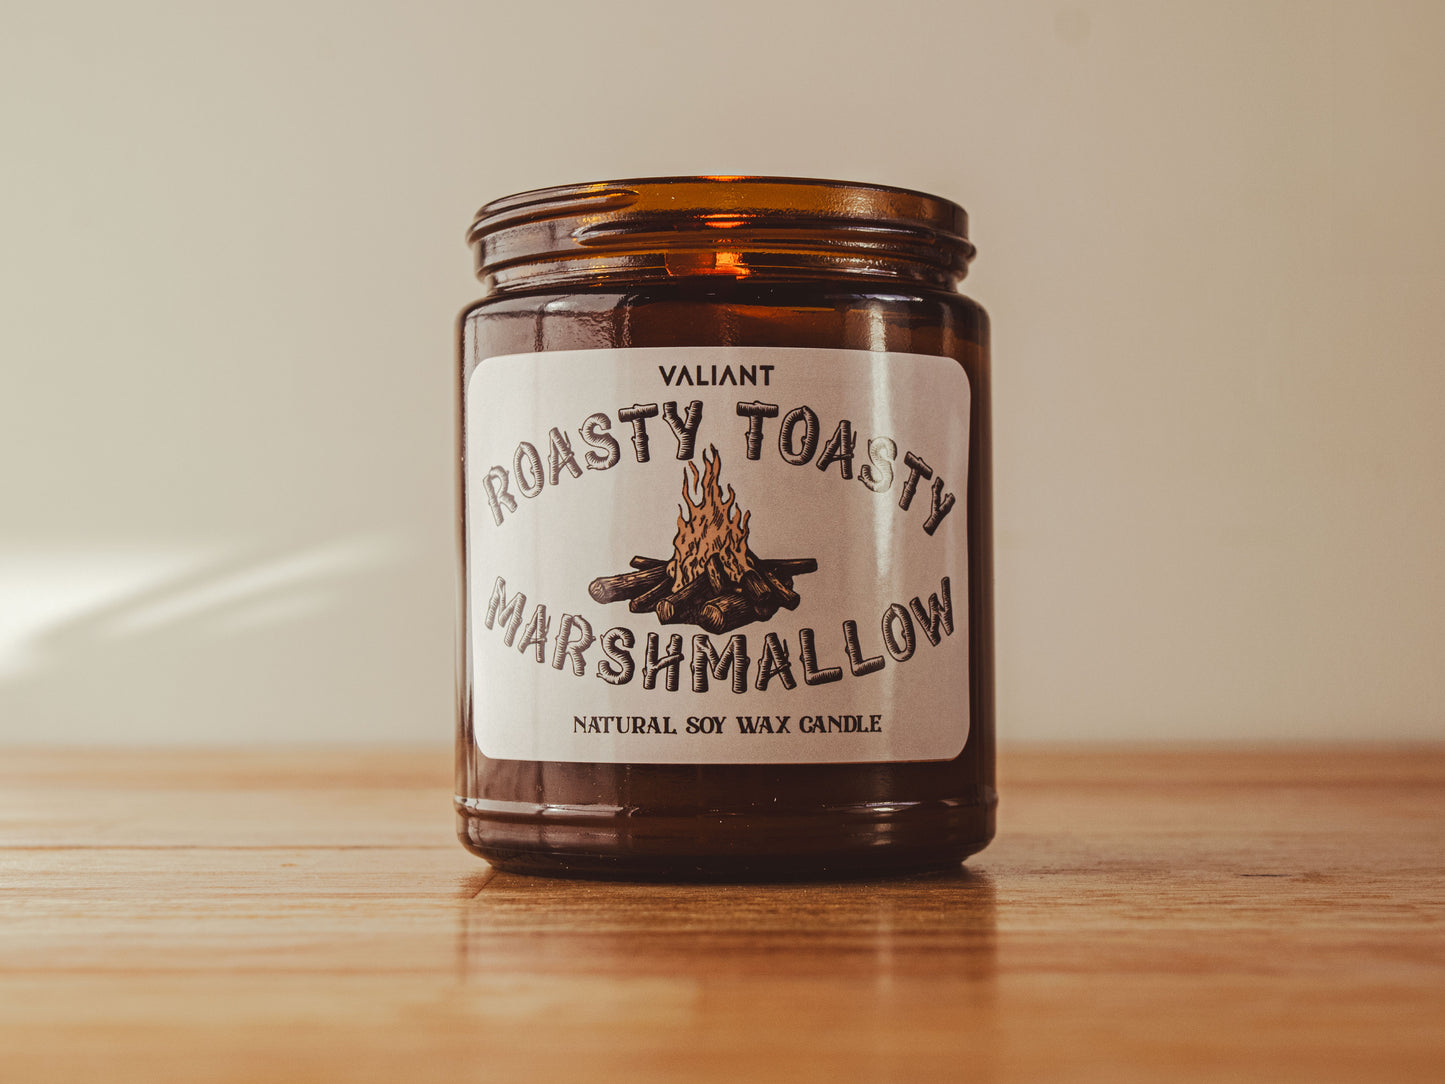 Roasty Toasty Marshmallow